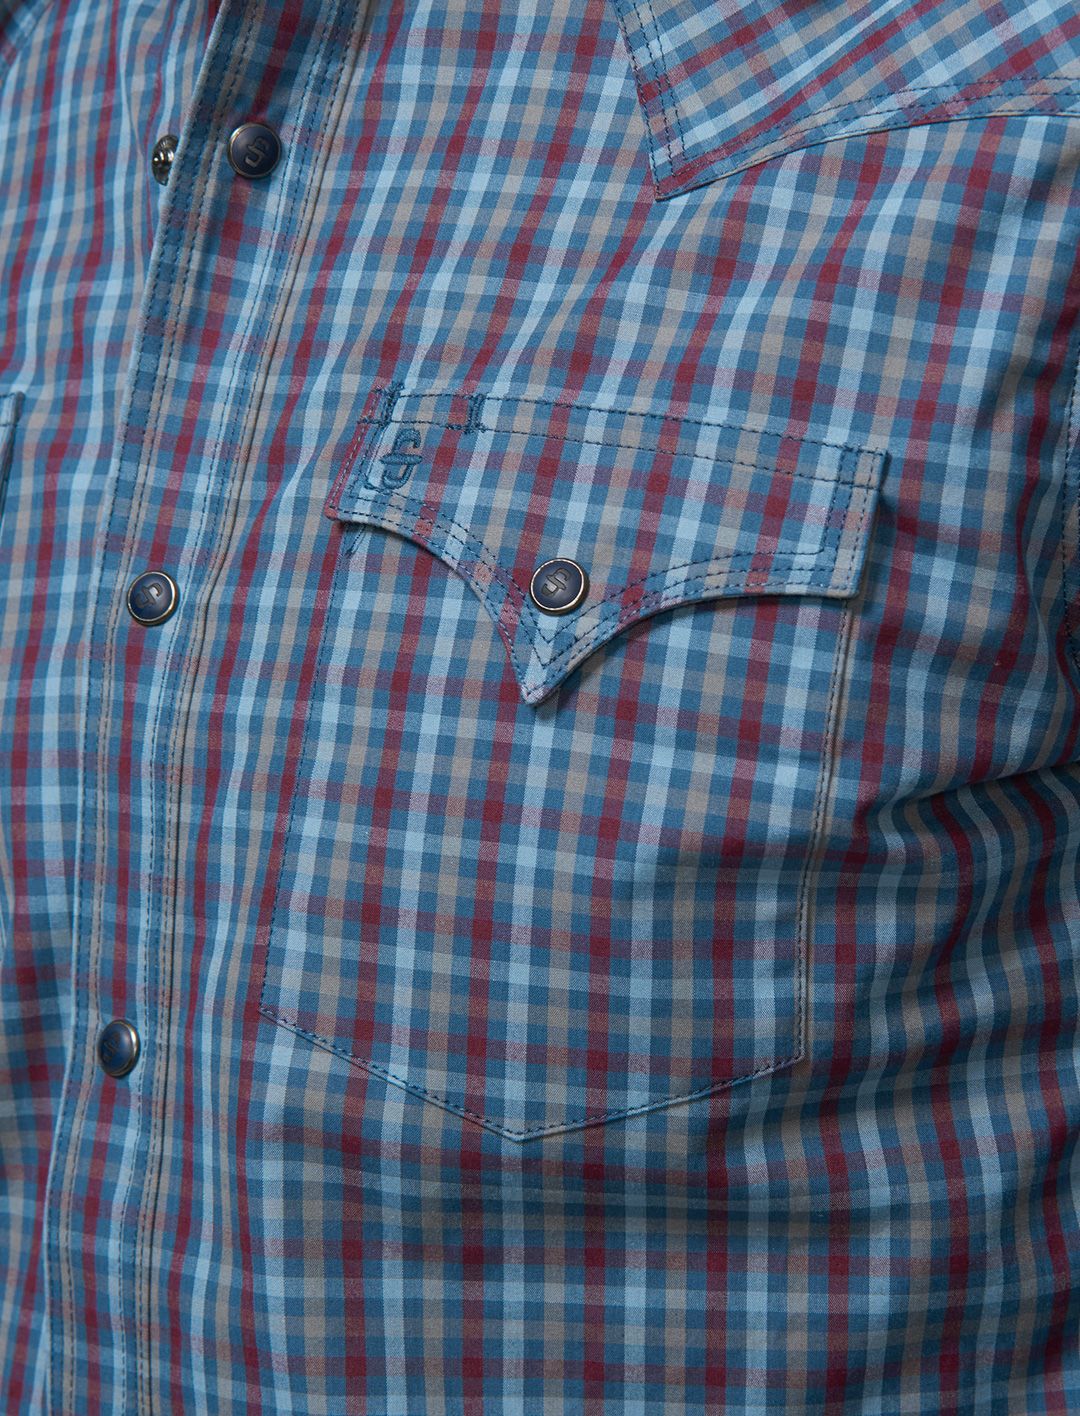 Stetson Men's Blue Plaid Snap Front Button Shirt 11-001-0478-1015 BU